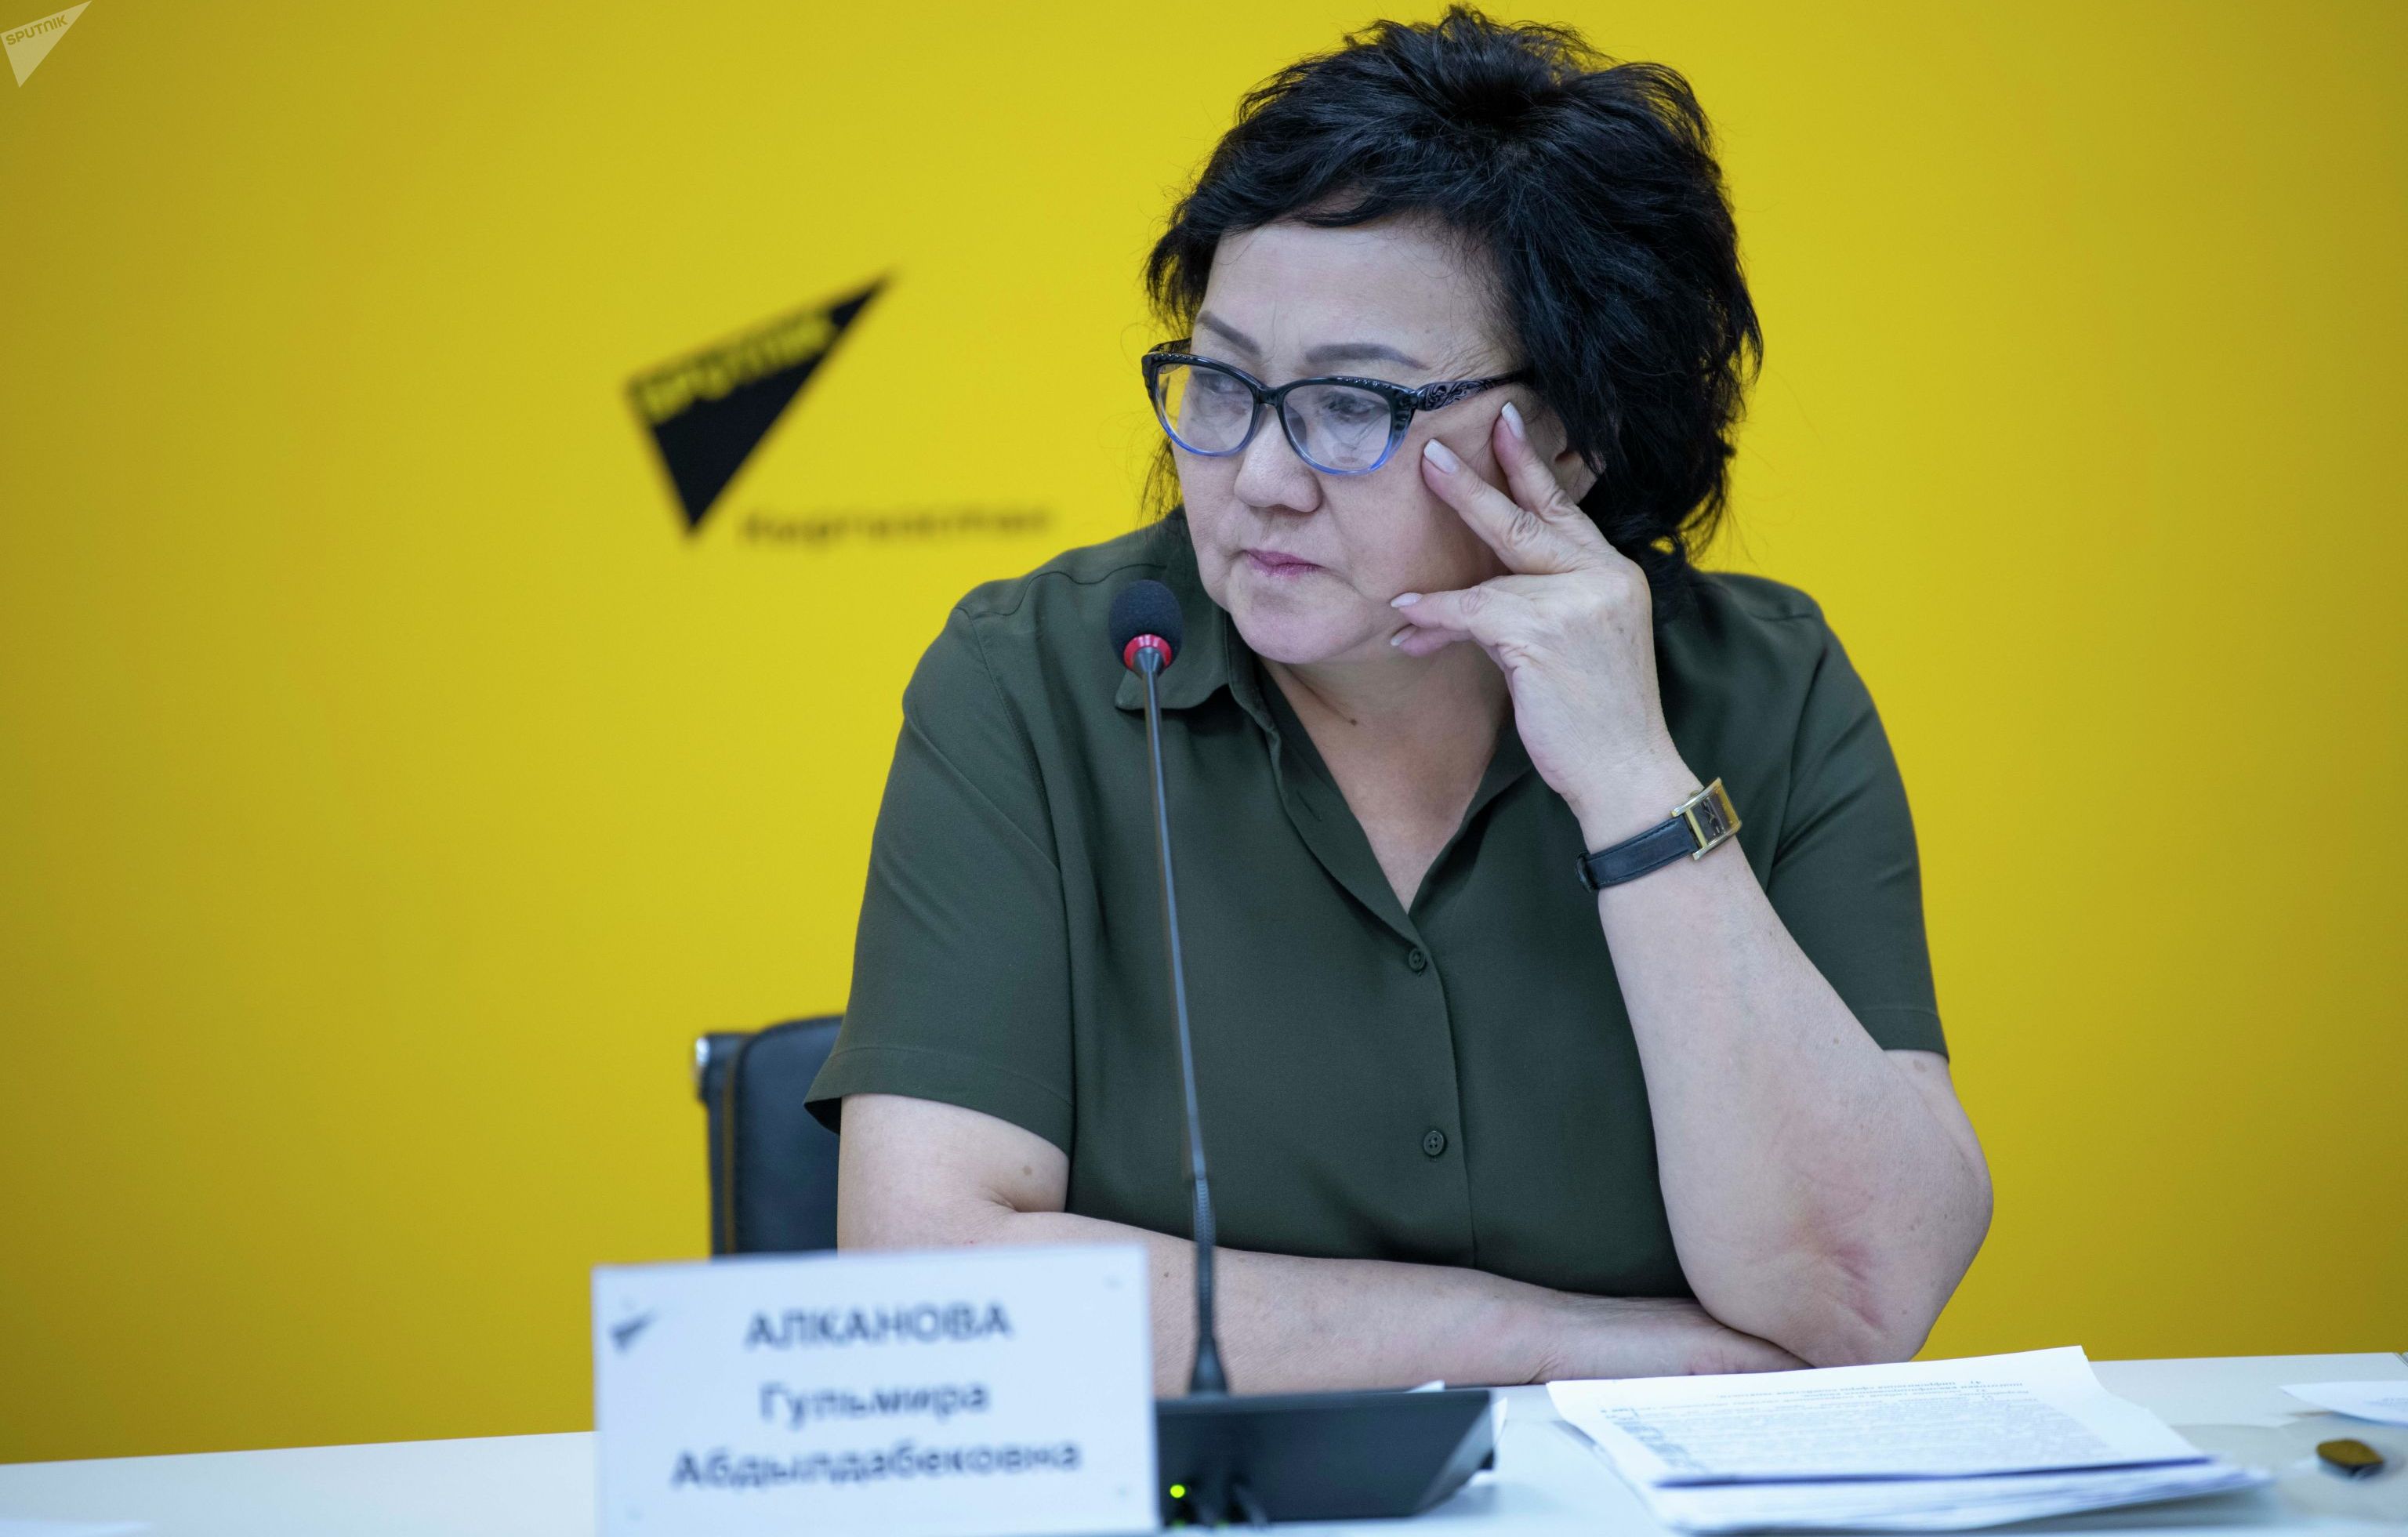 Заведующая отделом содействия занятости Министерства здравоохранения и социального развития Гульмира Алканова на брифинге в мультимедийном пресс-центре Sputnik Кыргызстан